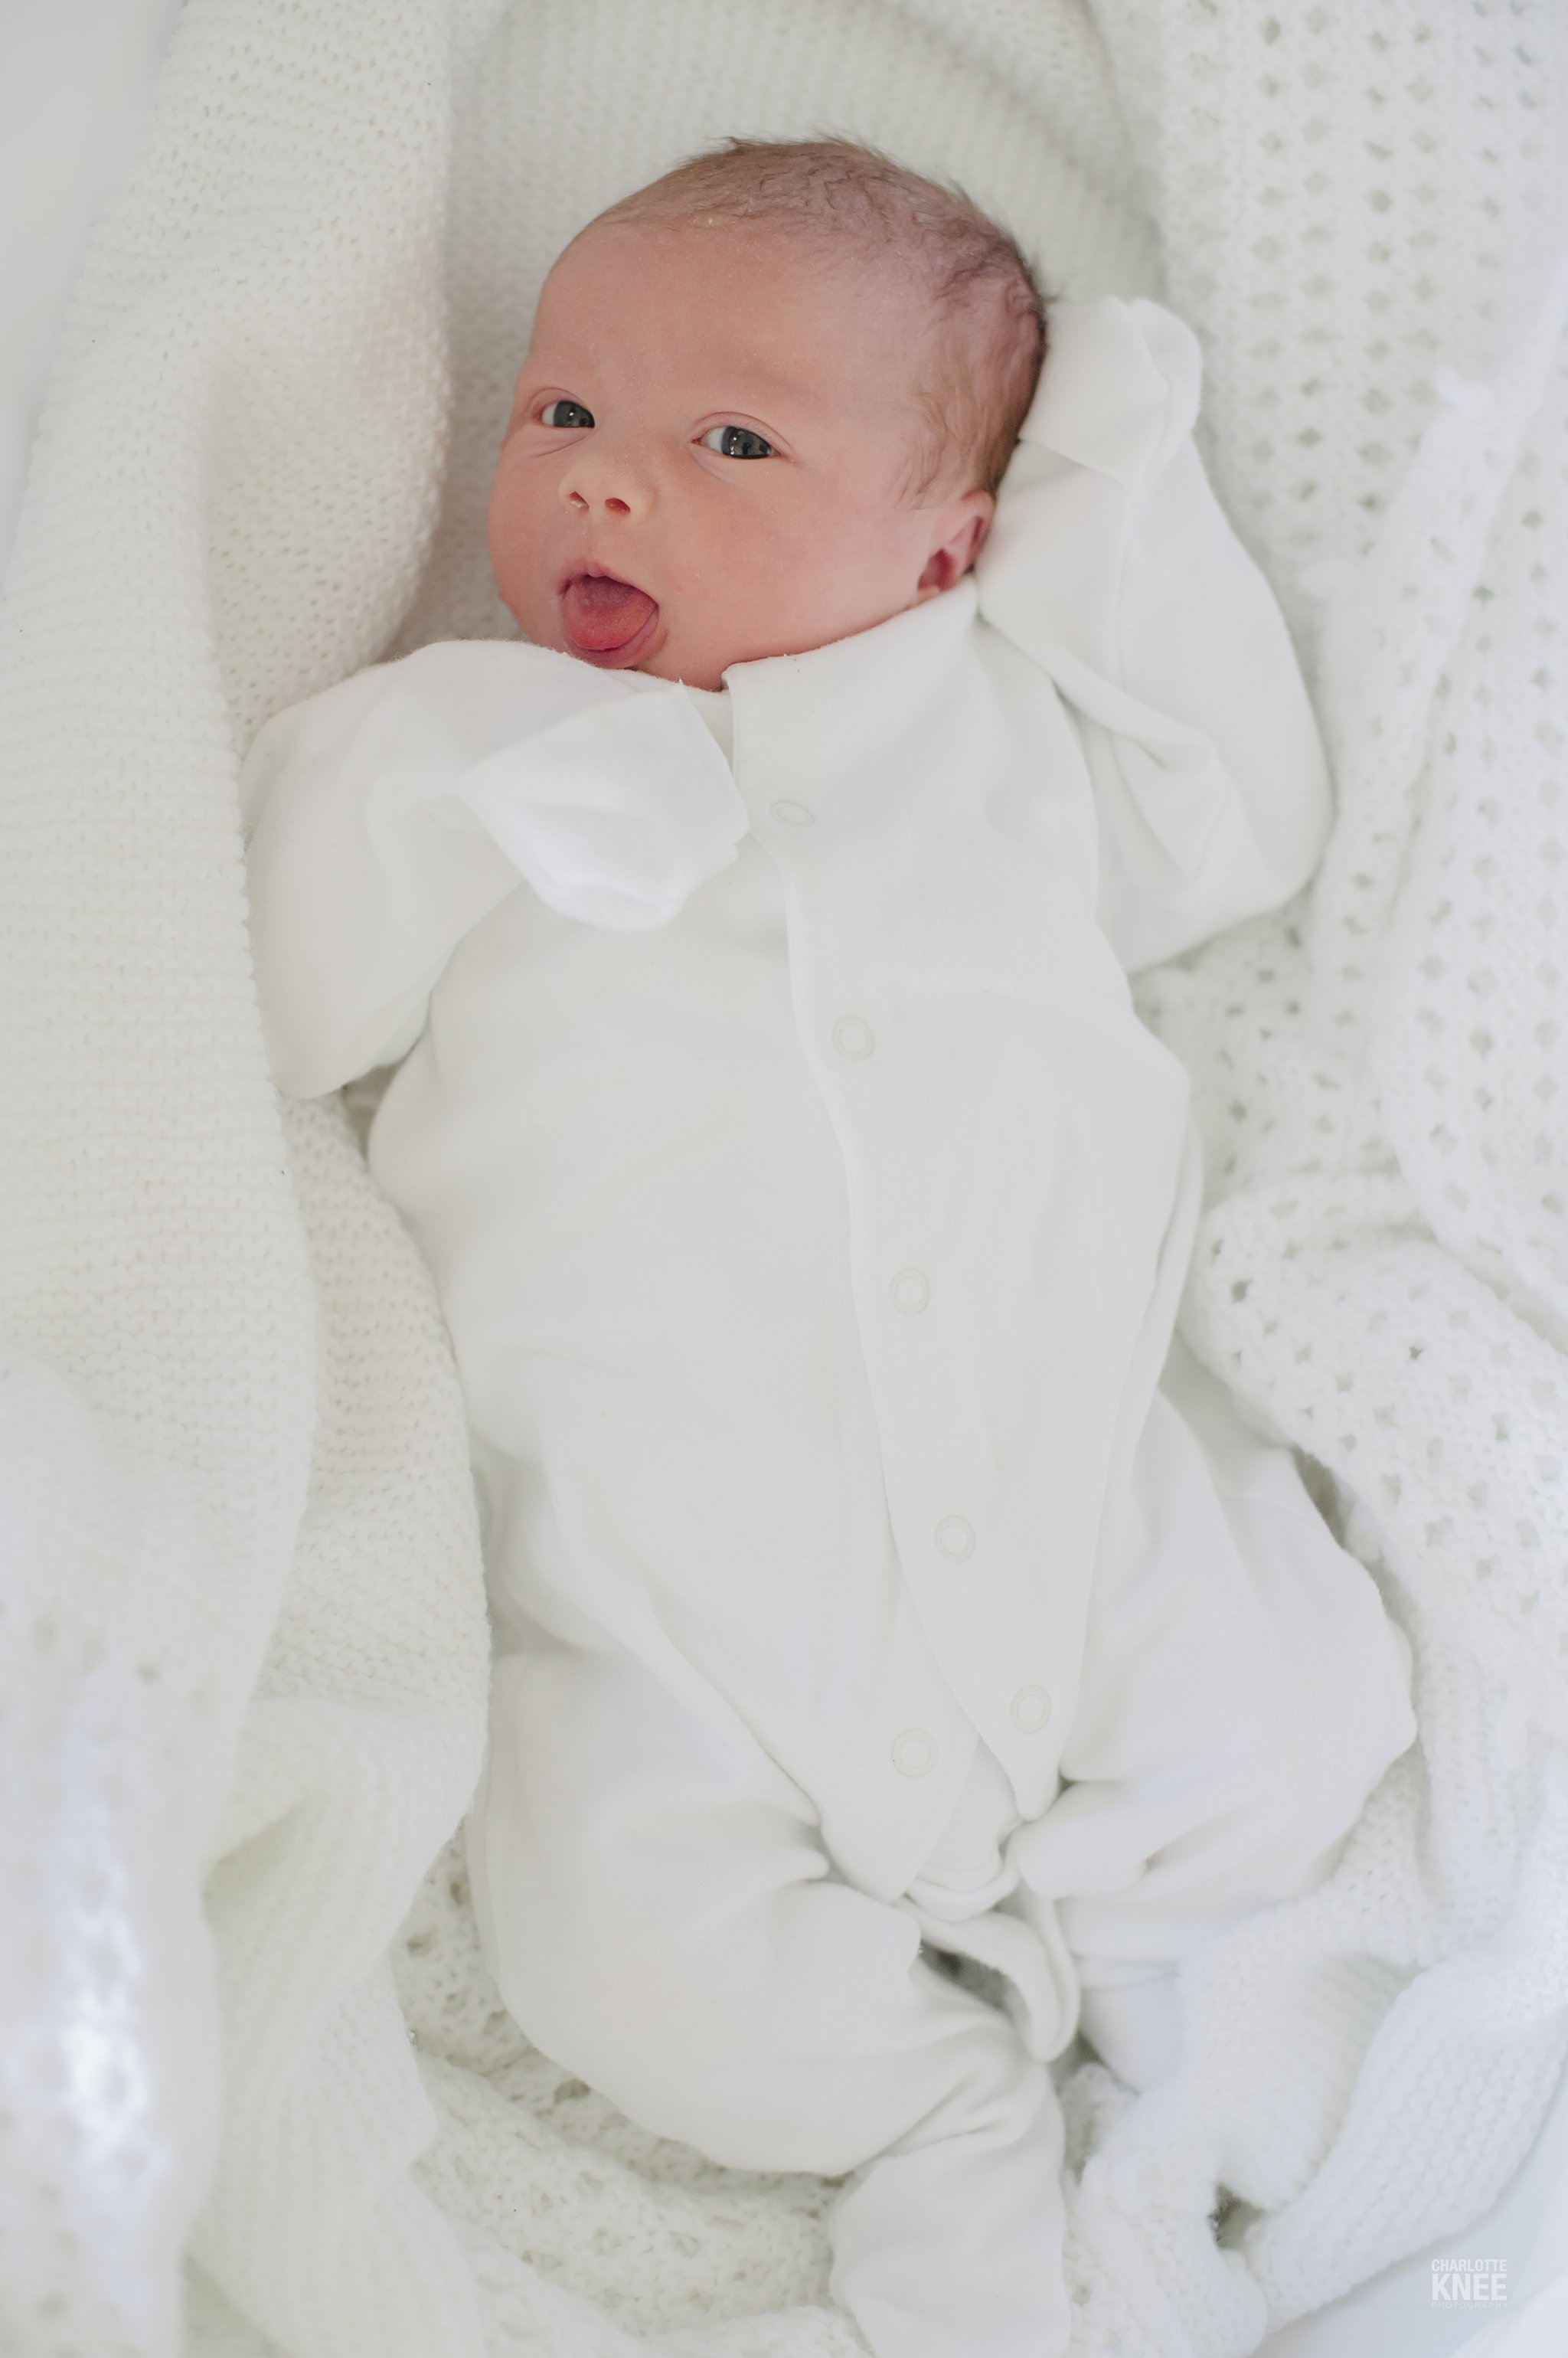 Newborn-Photography-Baby-Clara-Charlotte-Knee-Photography_0012.jpg